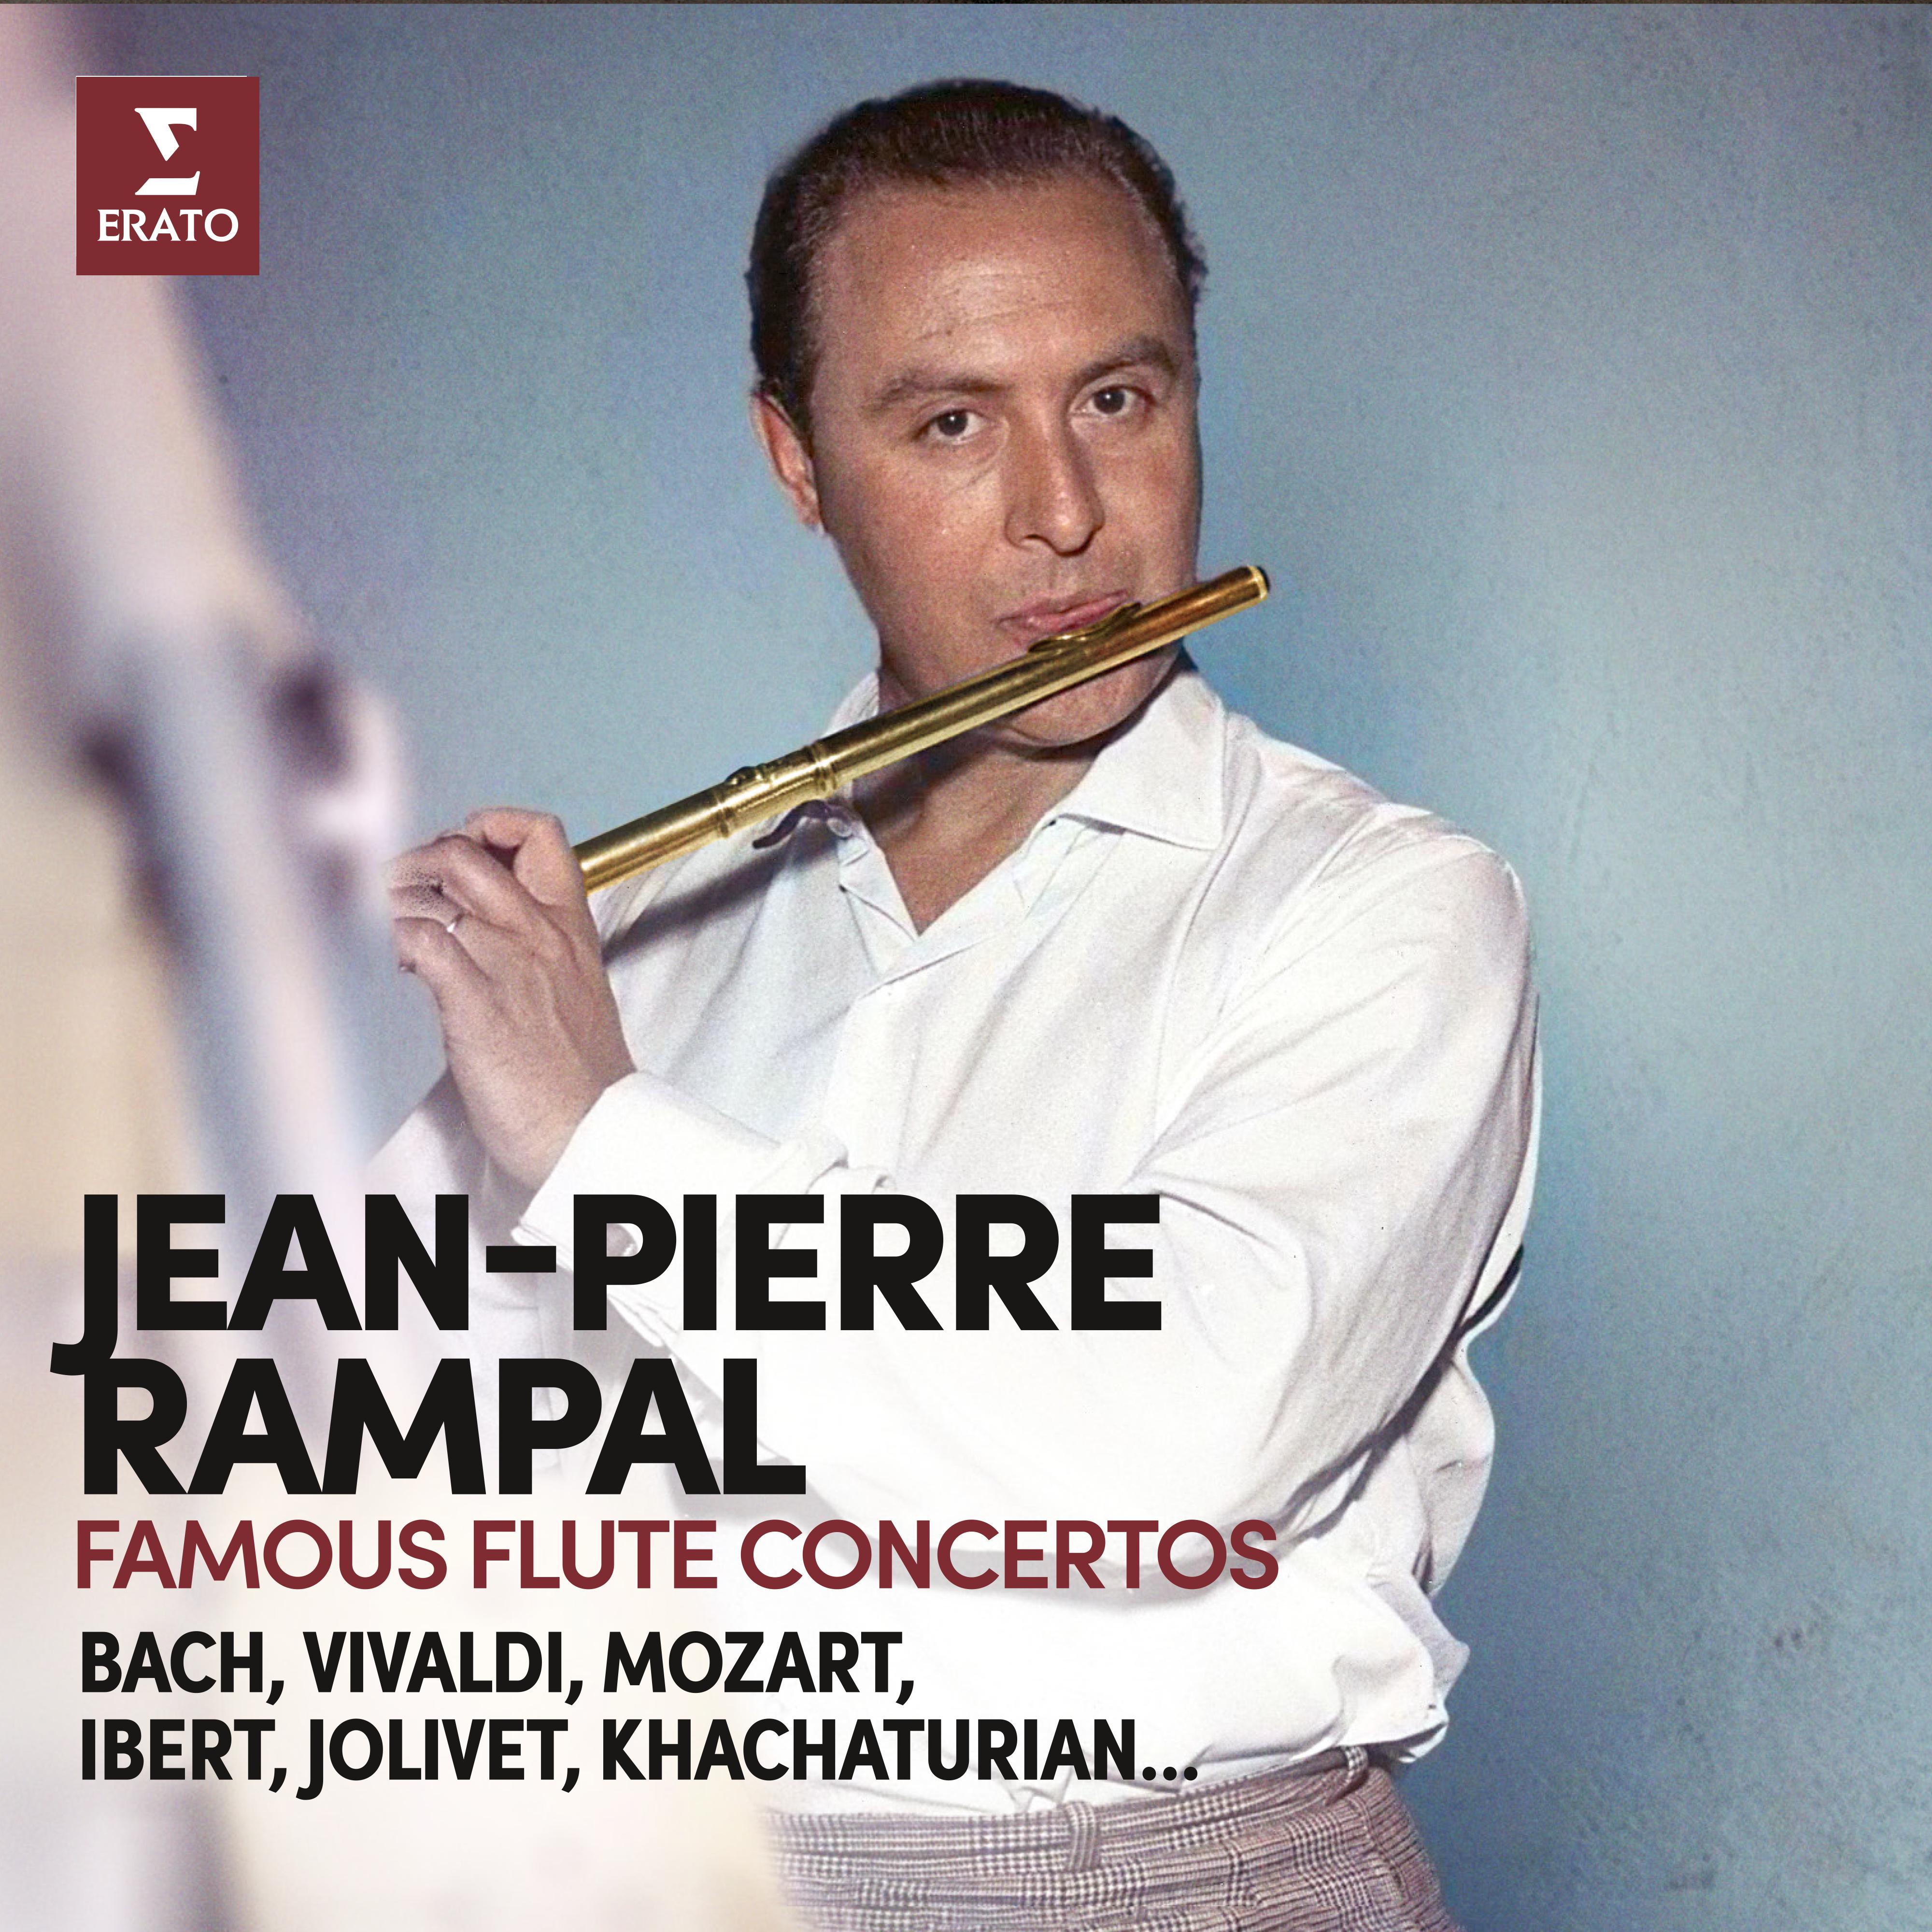 Jean-Pierre Rampal - Flute Concerto No. 2 in G Major:III. Presto